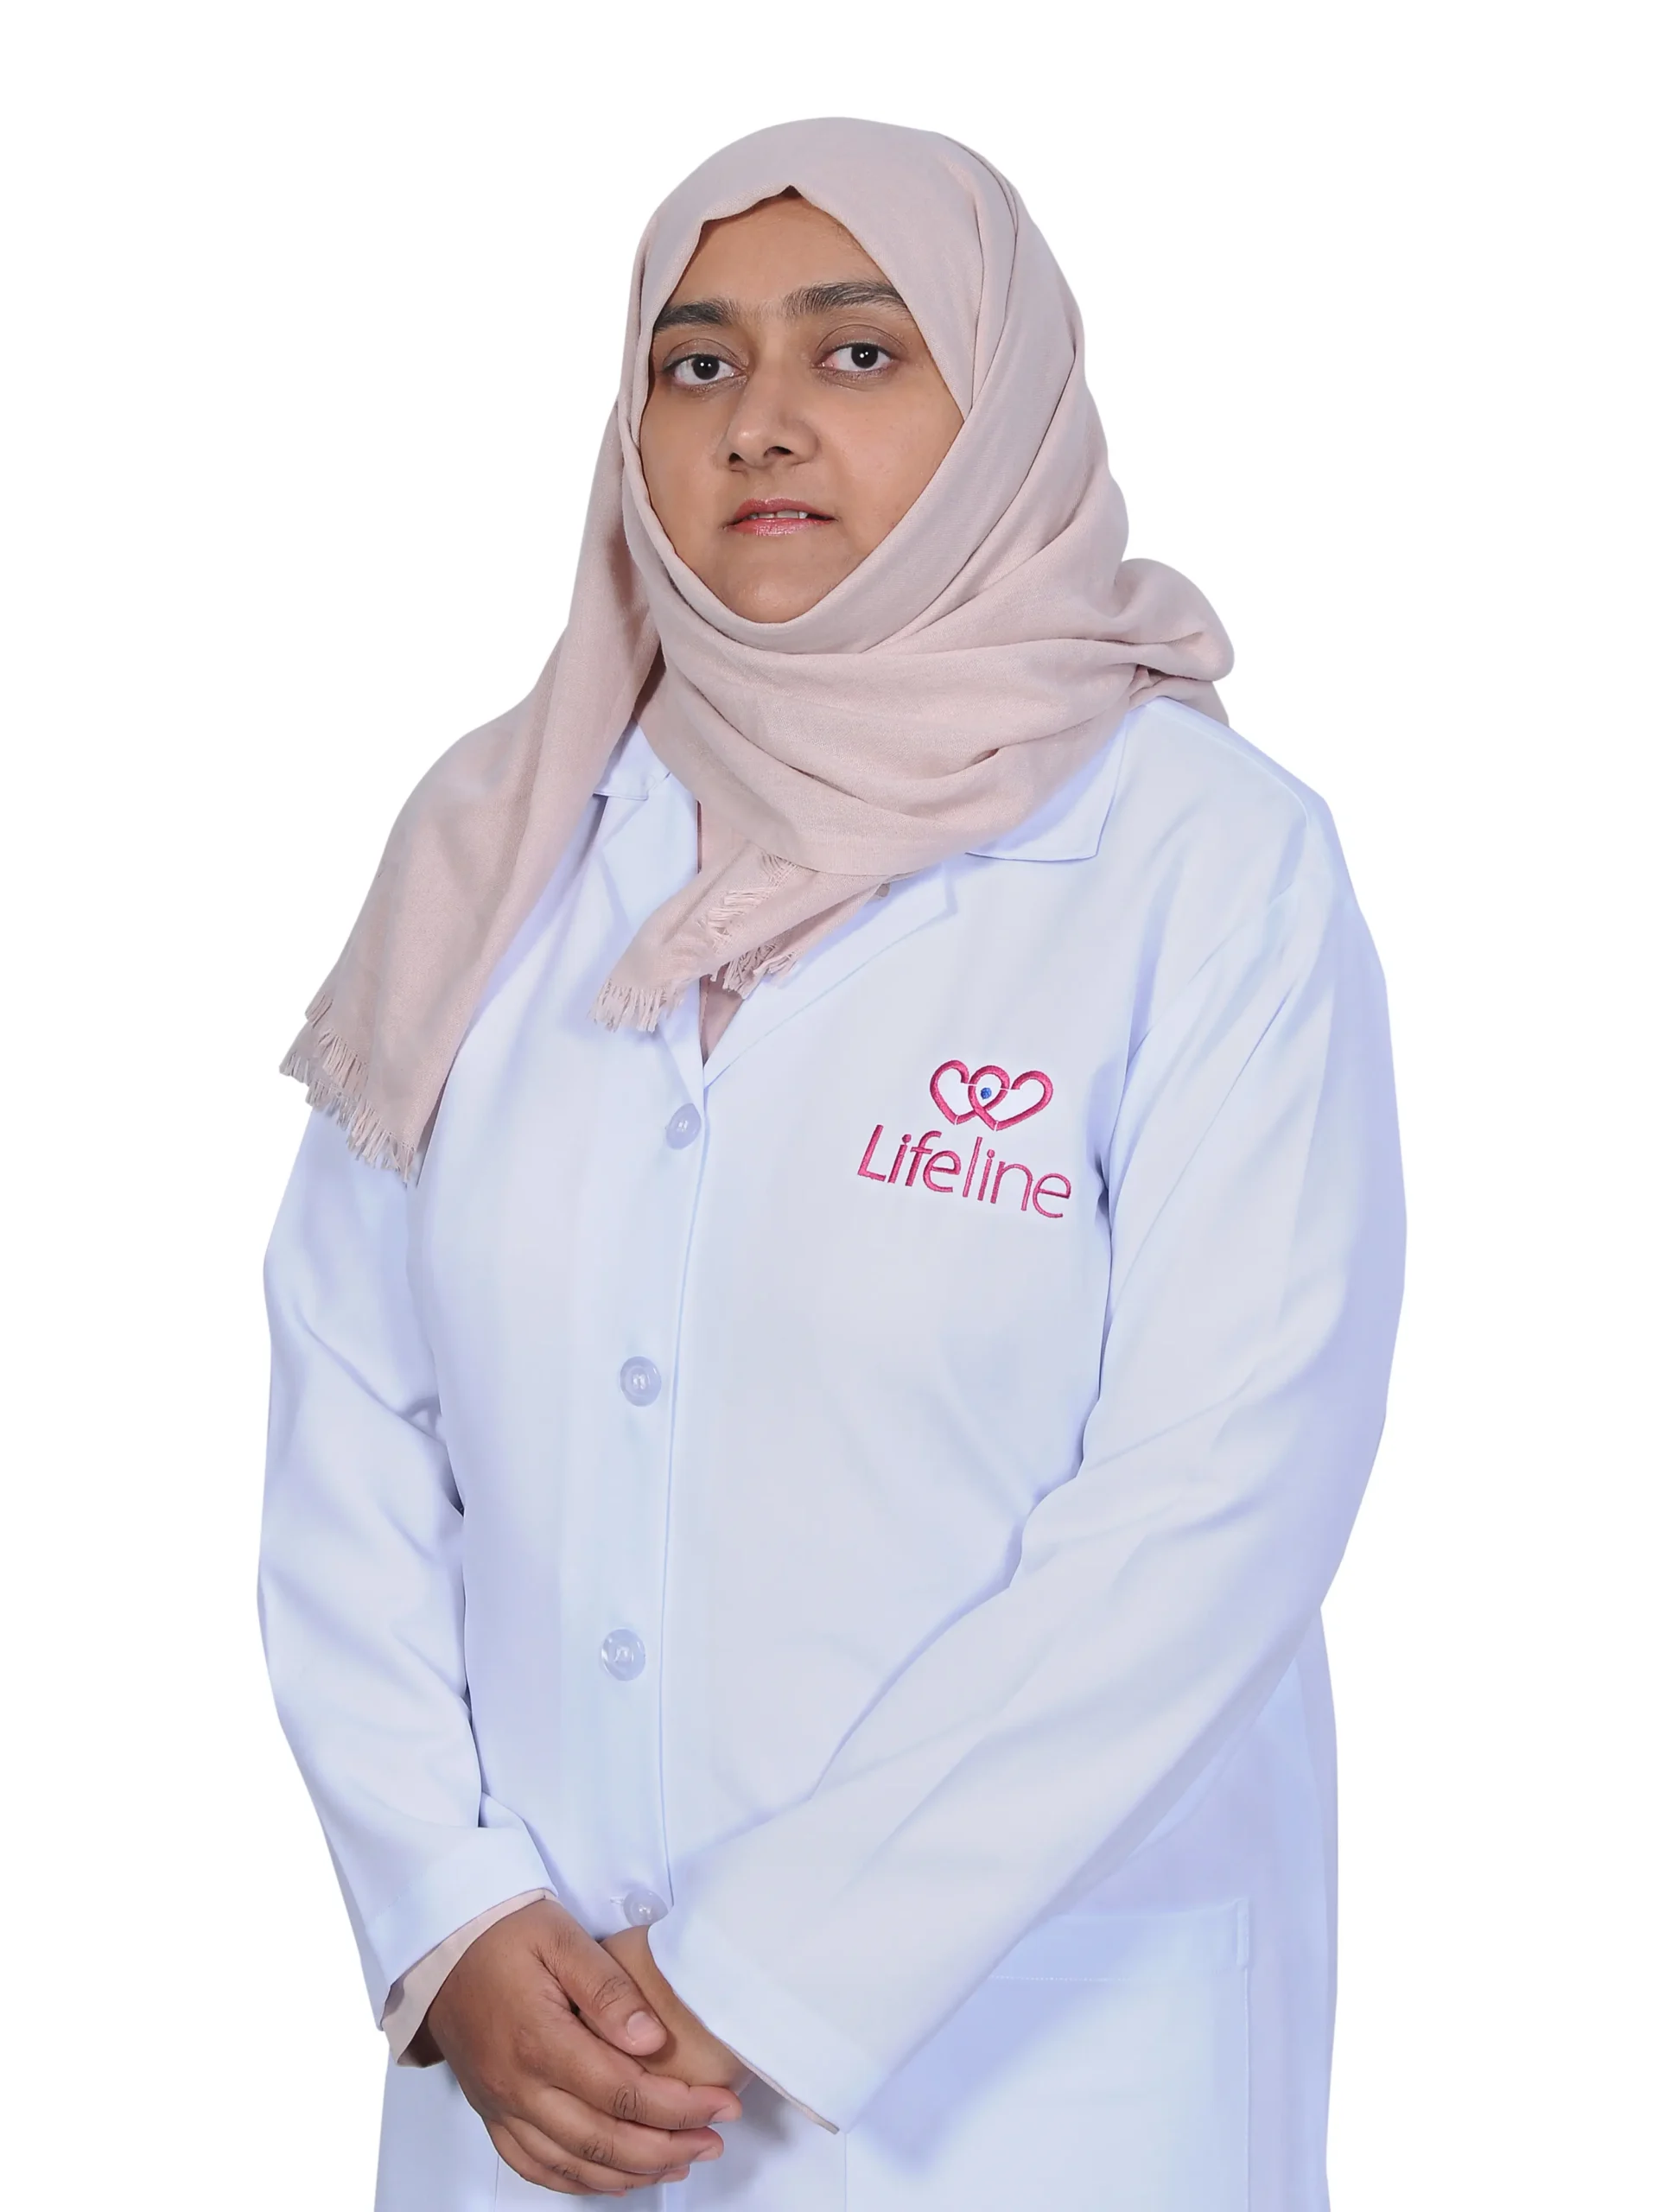 Dr. Aisha Al Jailani